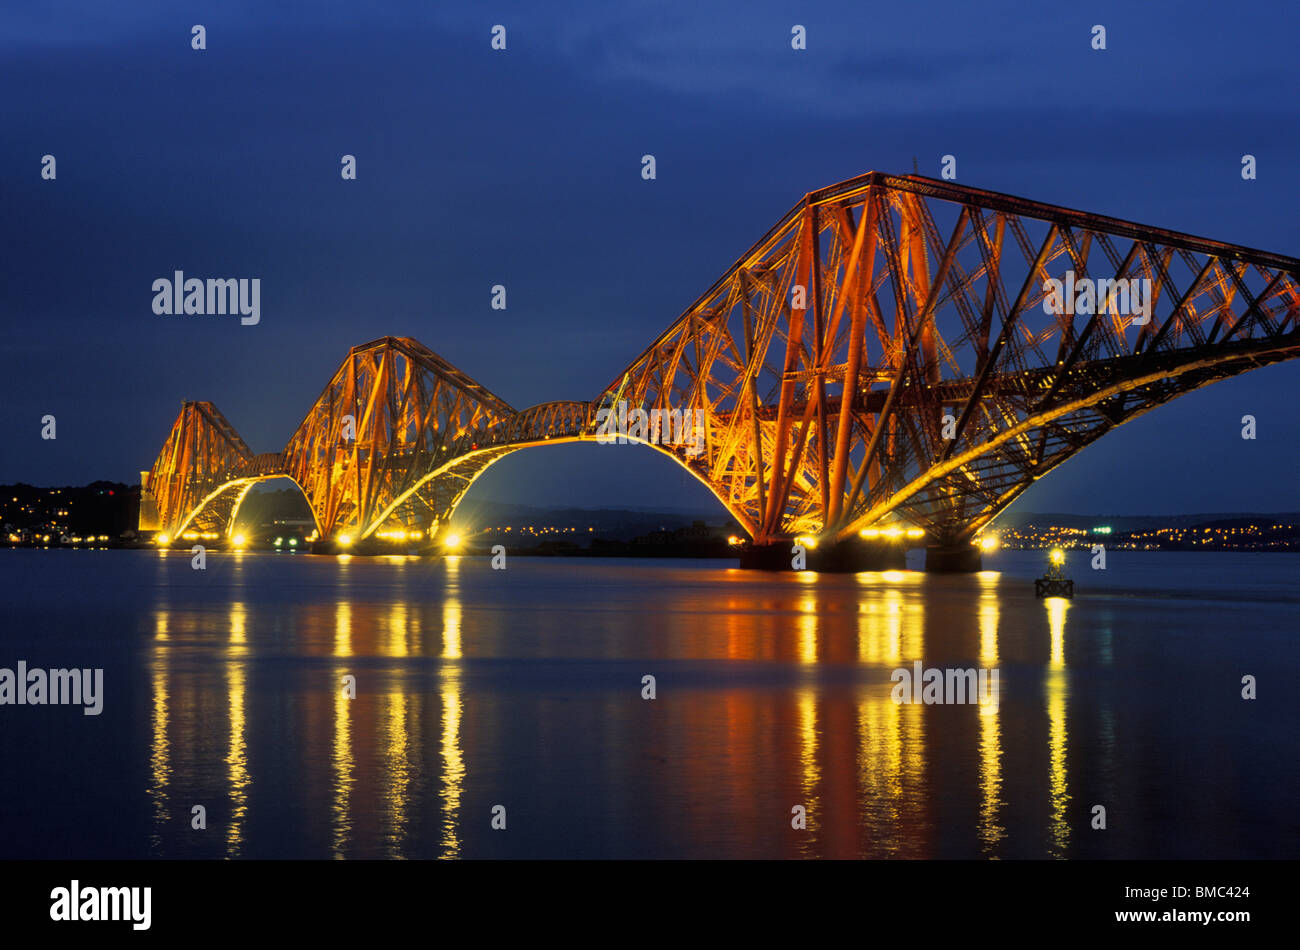 Weiter Bahn Brücke beleuchtet bei Nacht South Queensferry Edinburgh Midlothian Schottland Großbritannien gb EU-Europa Stockfoto